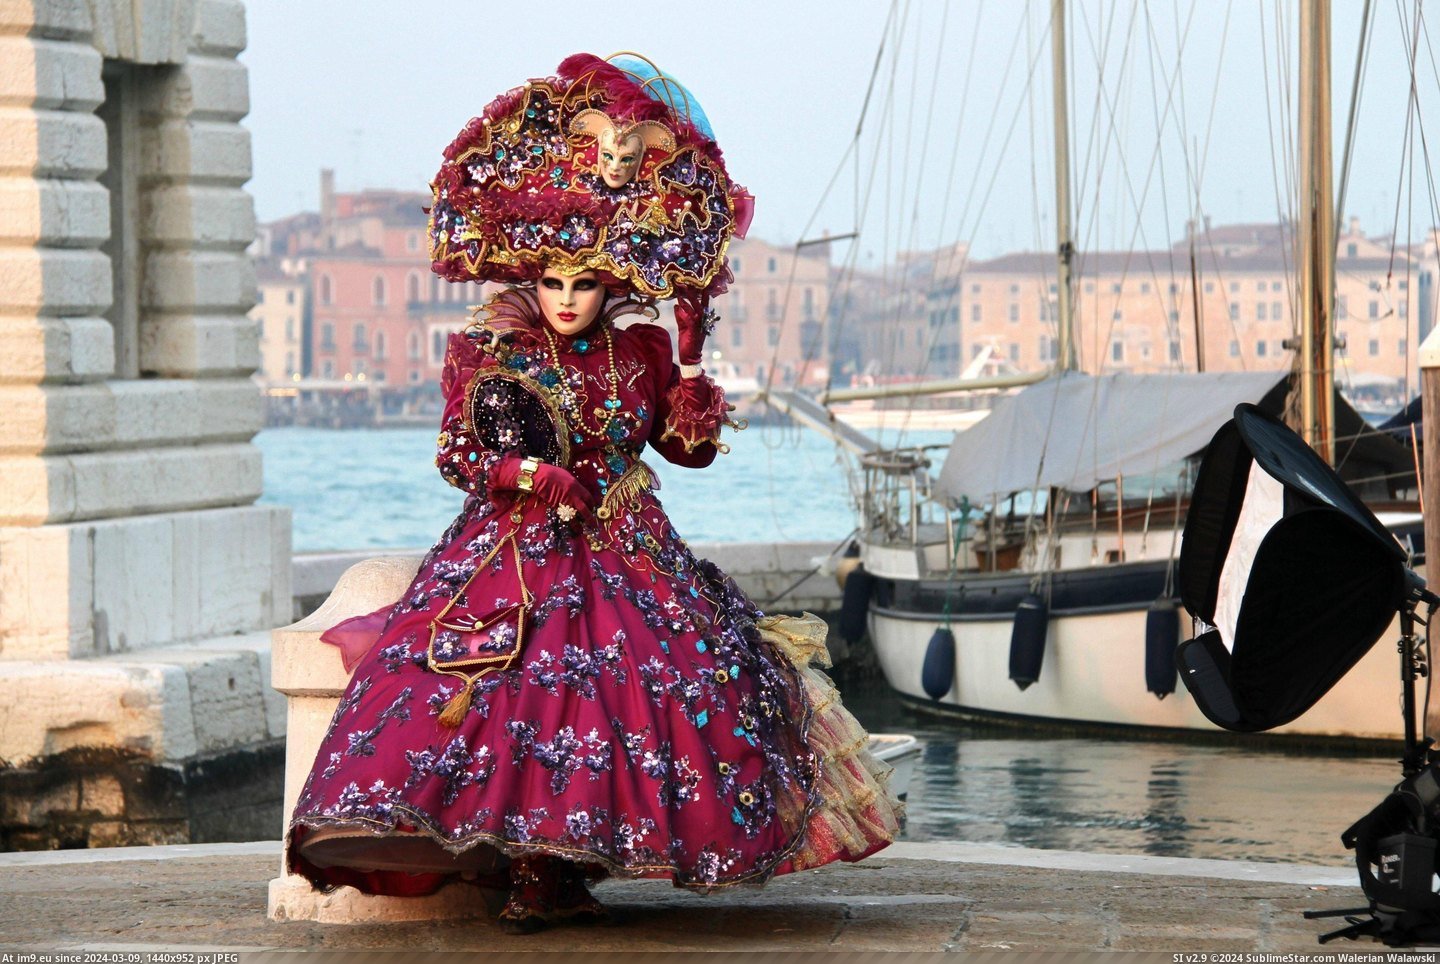 #Costume #Carnival #Venice [Pics] Venice Carnival Costume Pic. (Bild von album My r/PICS favs))